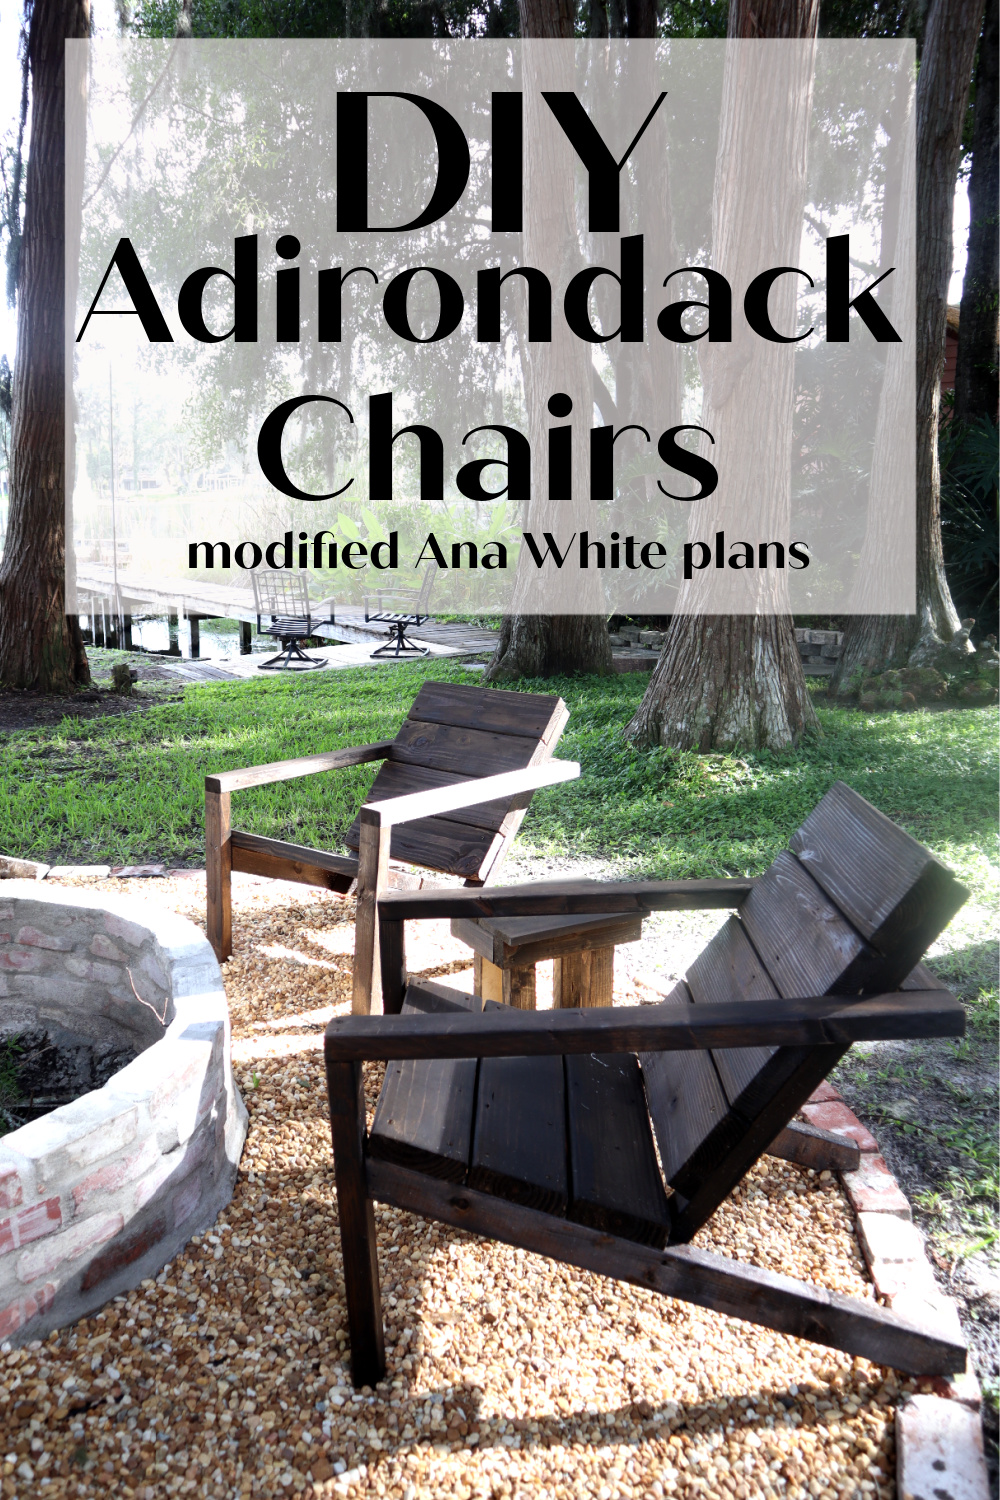 Adirondack chairs 